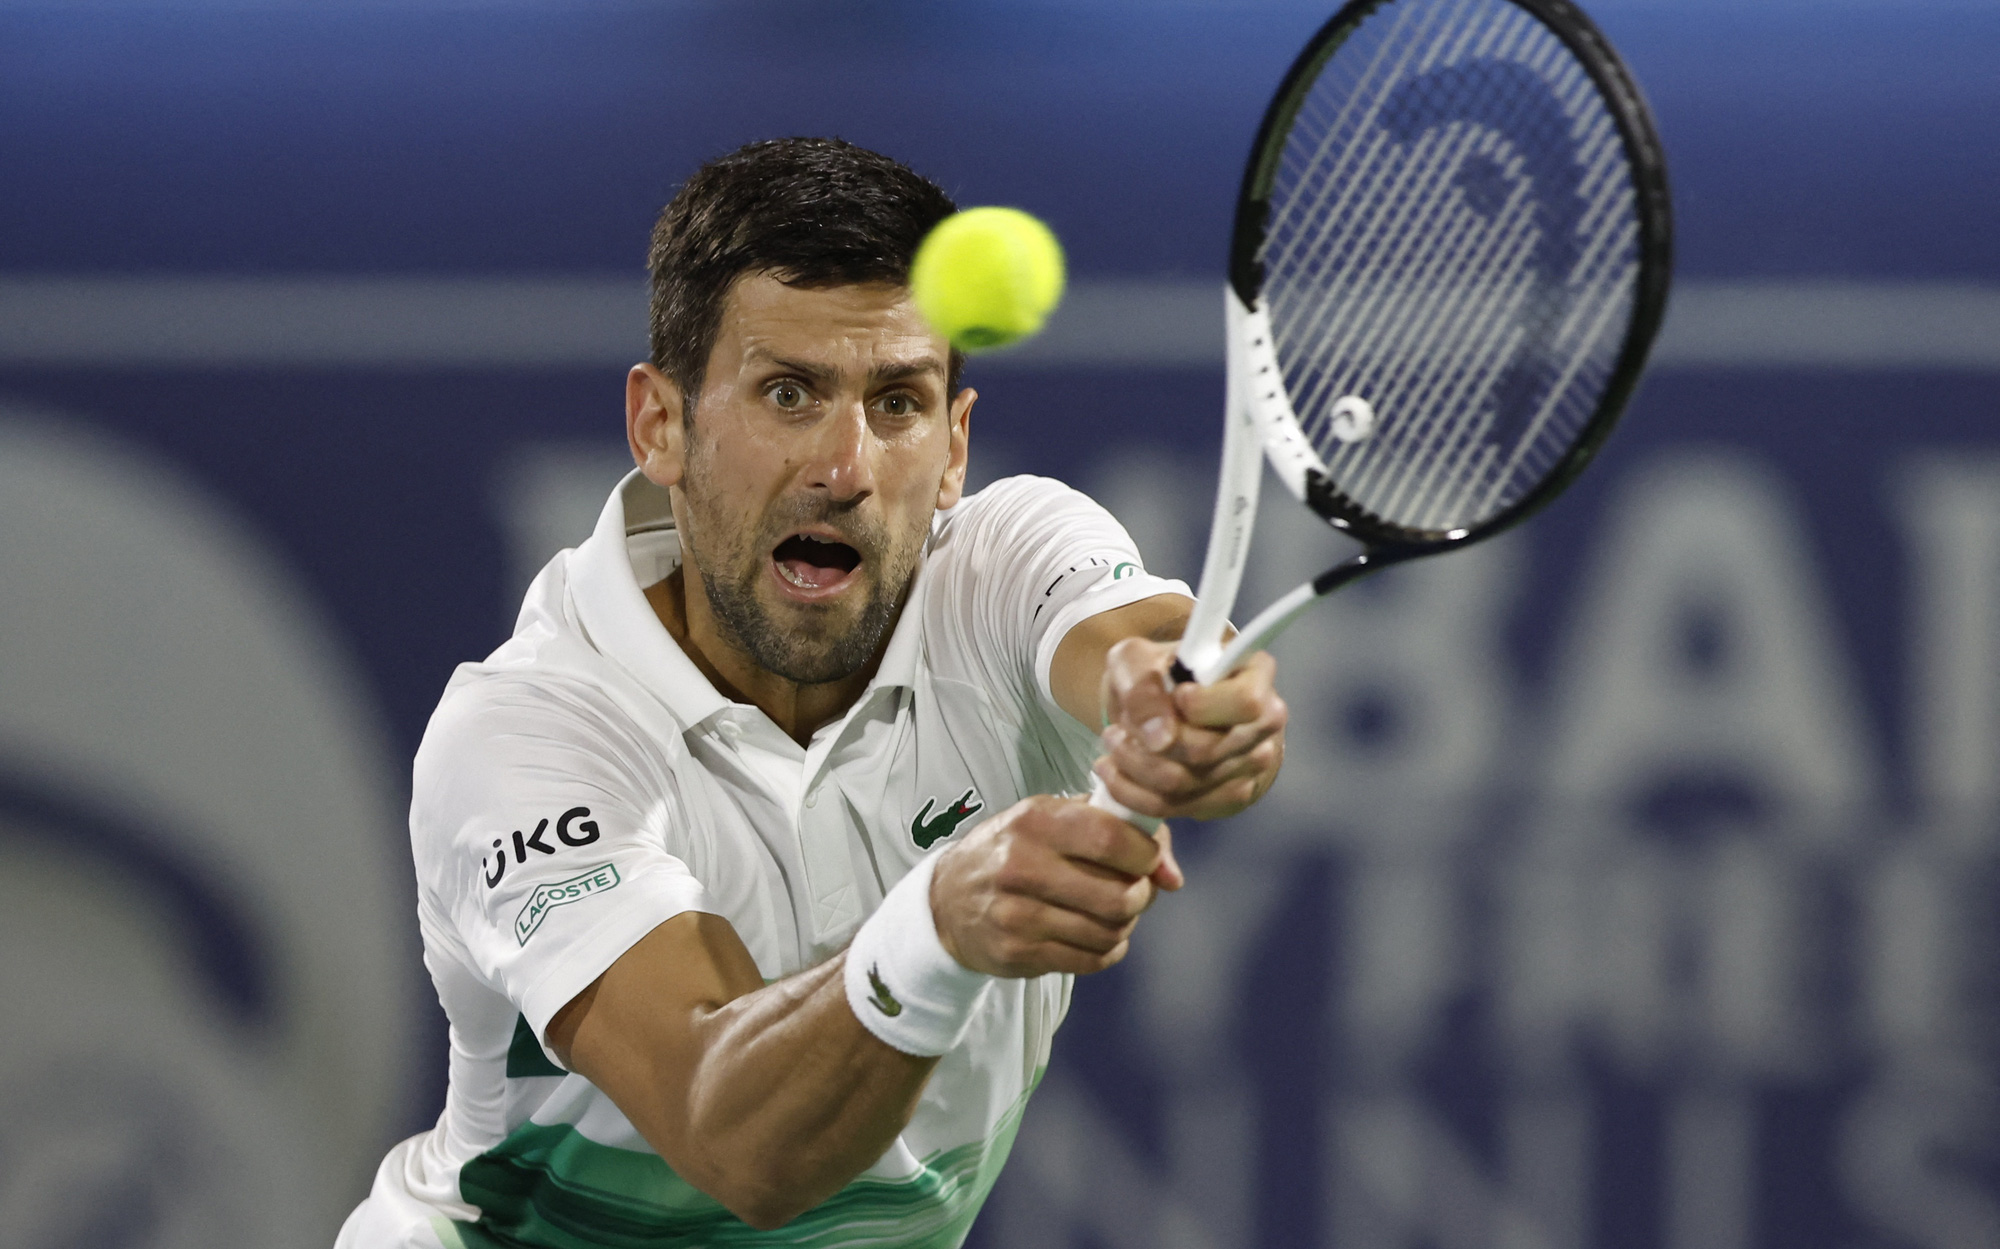 Giải Pháp mở rộng 2022: Sẽ có mặt Novak Djokovic?